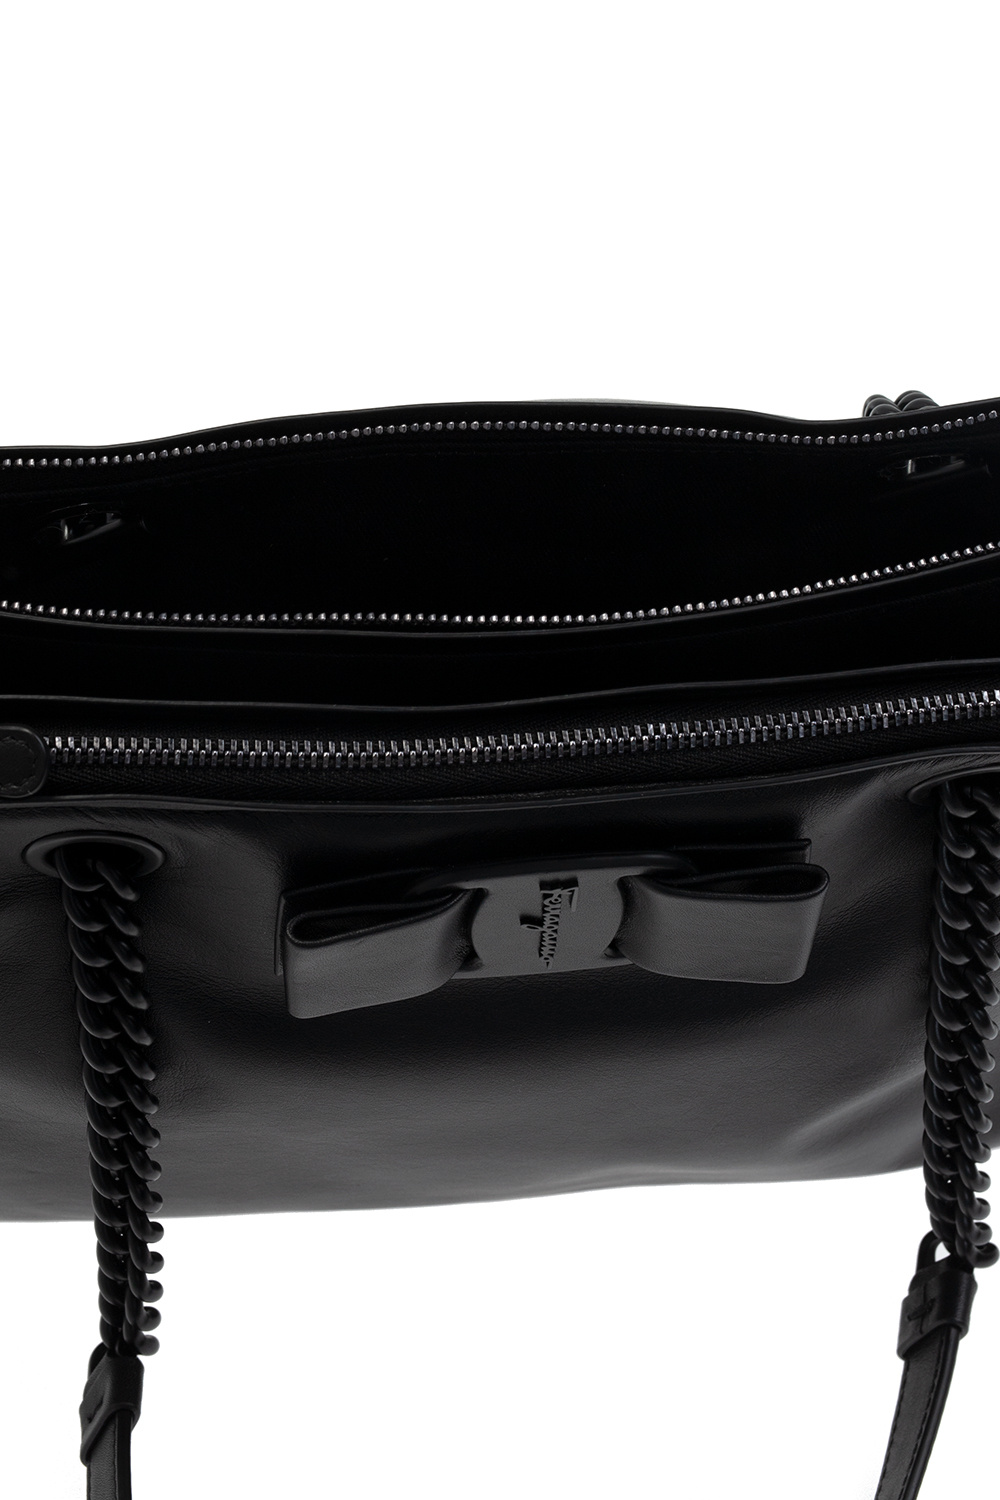 Salvatore Ferragamo 'Viva' hand bag | Women's Bags | IetpShops 